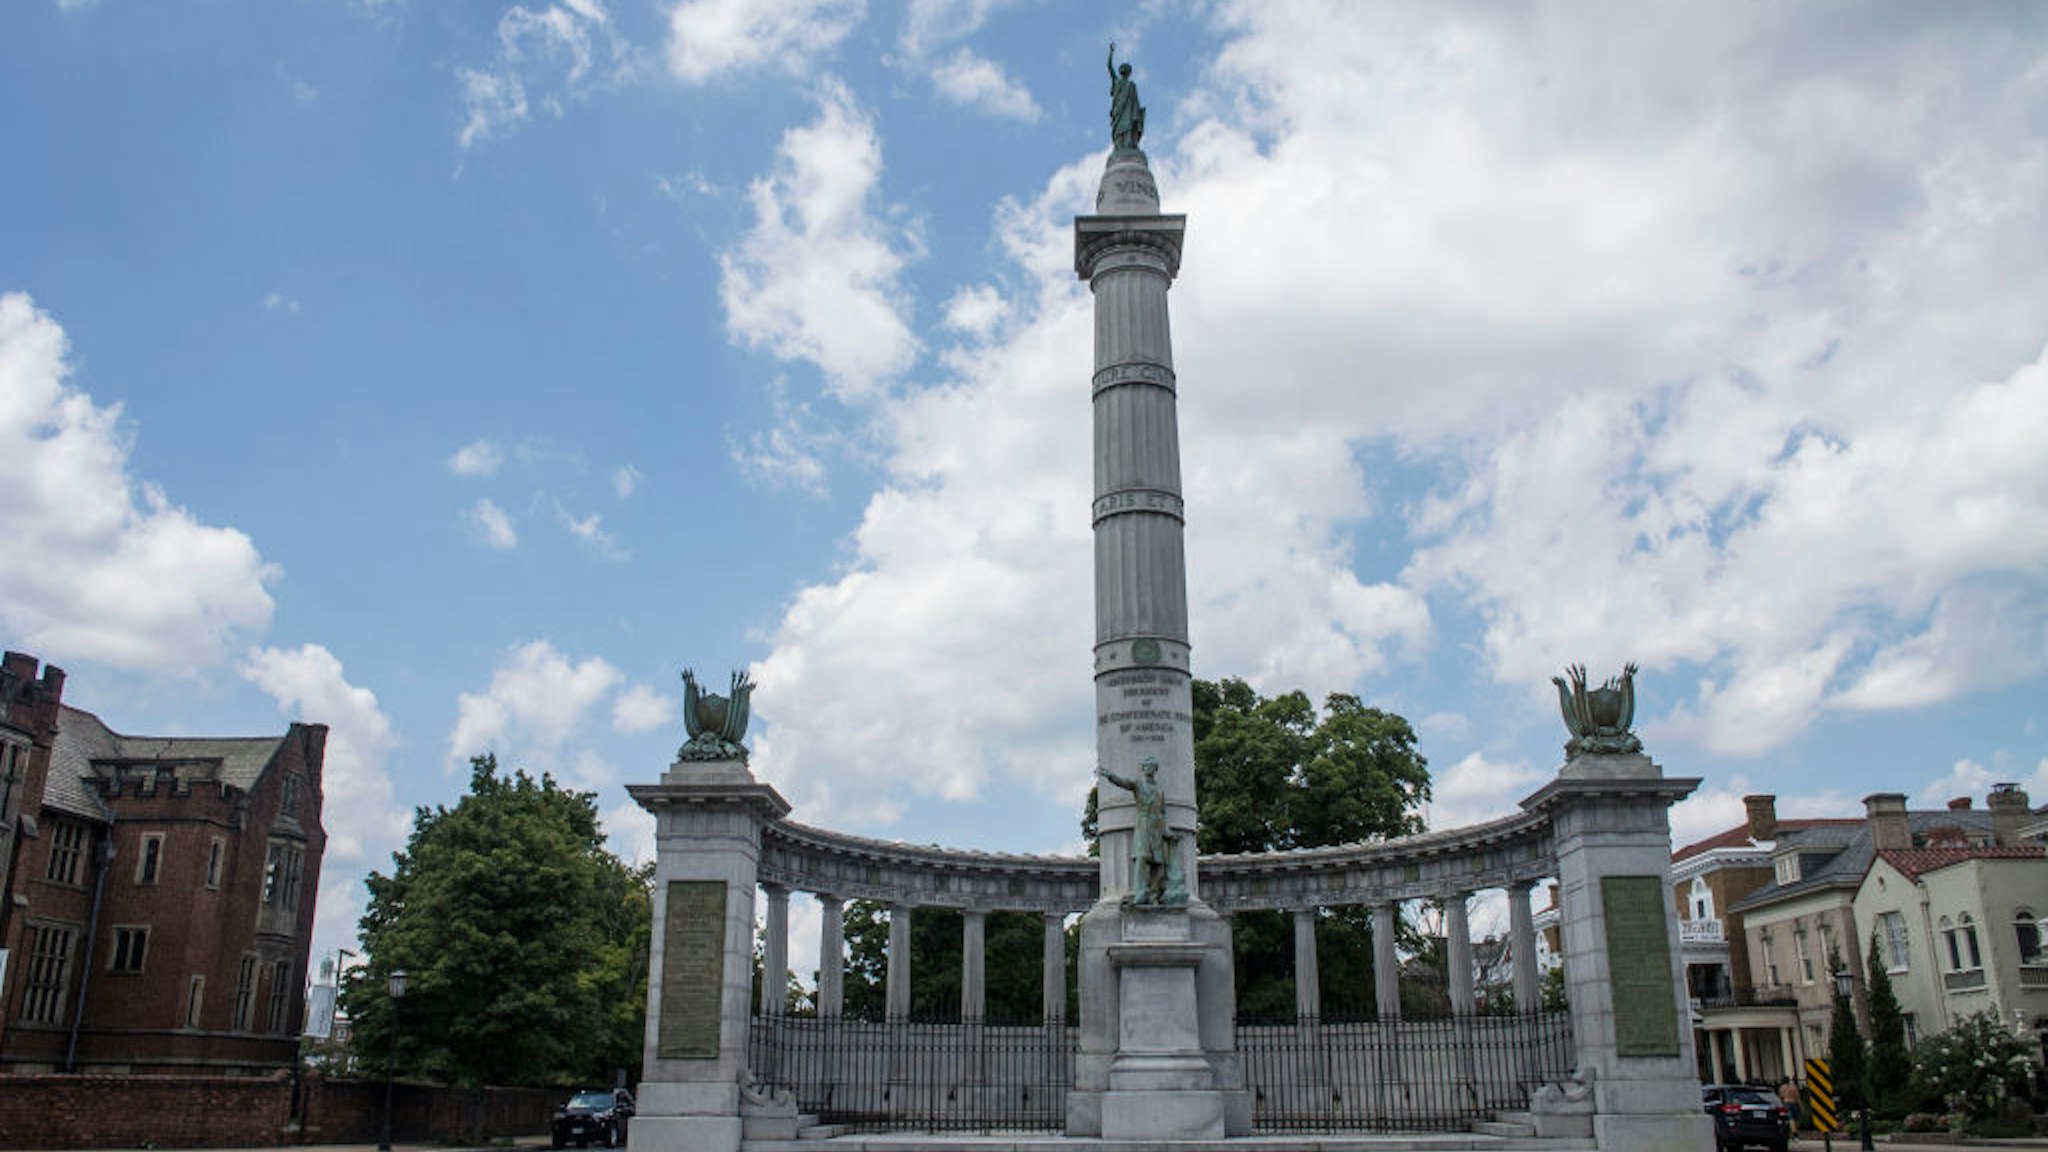 Statue of jefferson Davis on August 19, 2017 in Richmond.